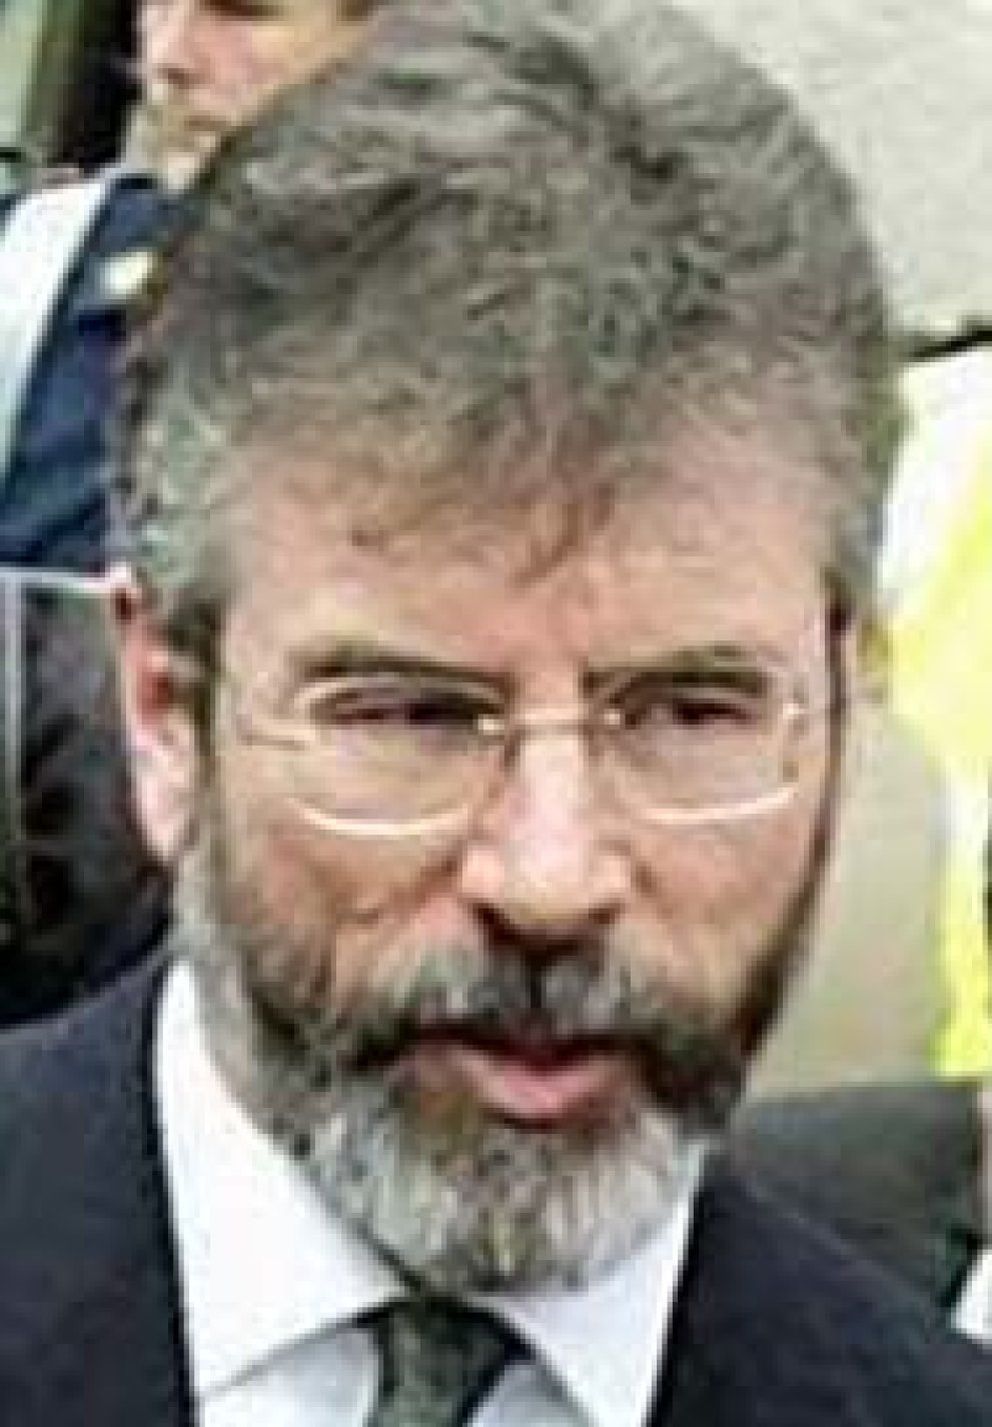 Foto: El presidente del Sinn Fein, brazo político del IRA, pidió el abandono de la lucha armada para alcanzar sus objetivos por medios exclusivamente políticos.